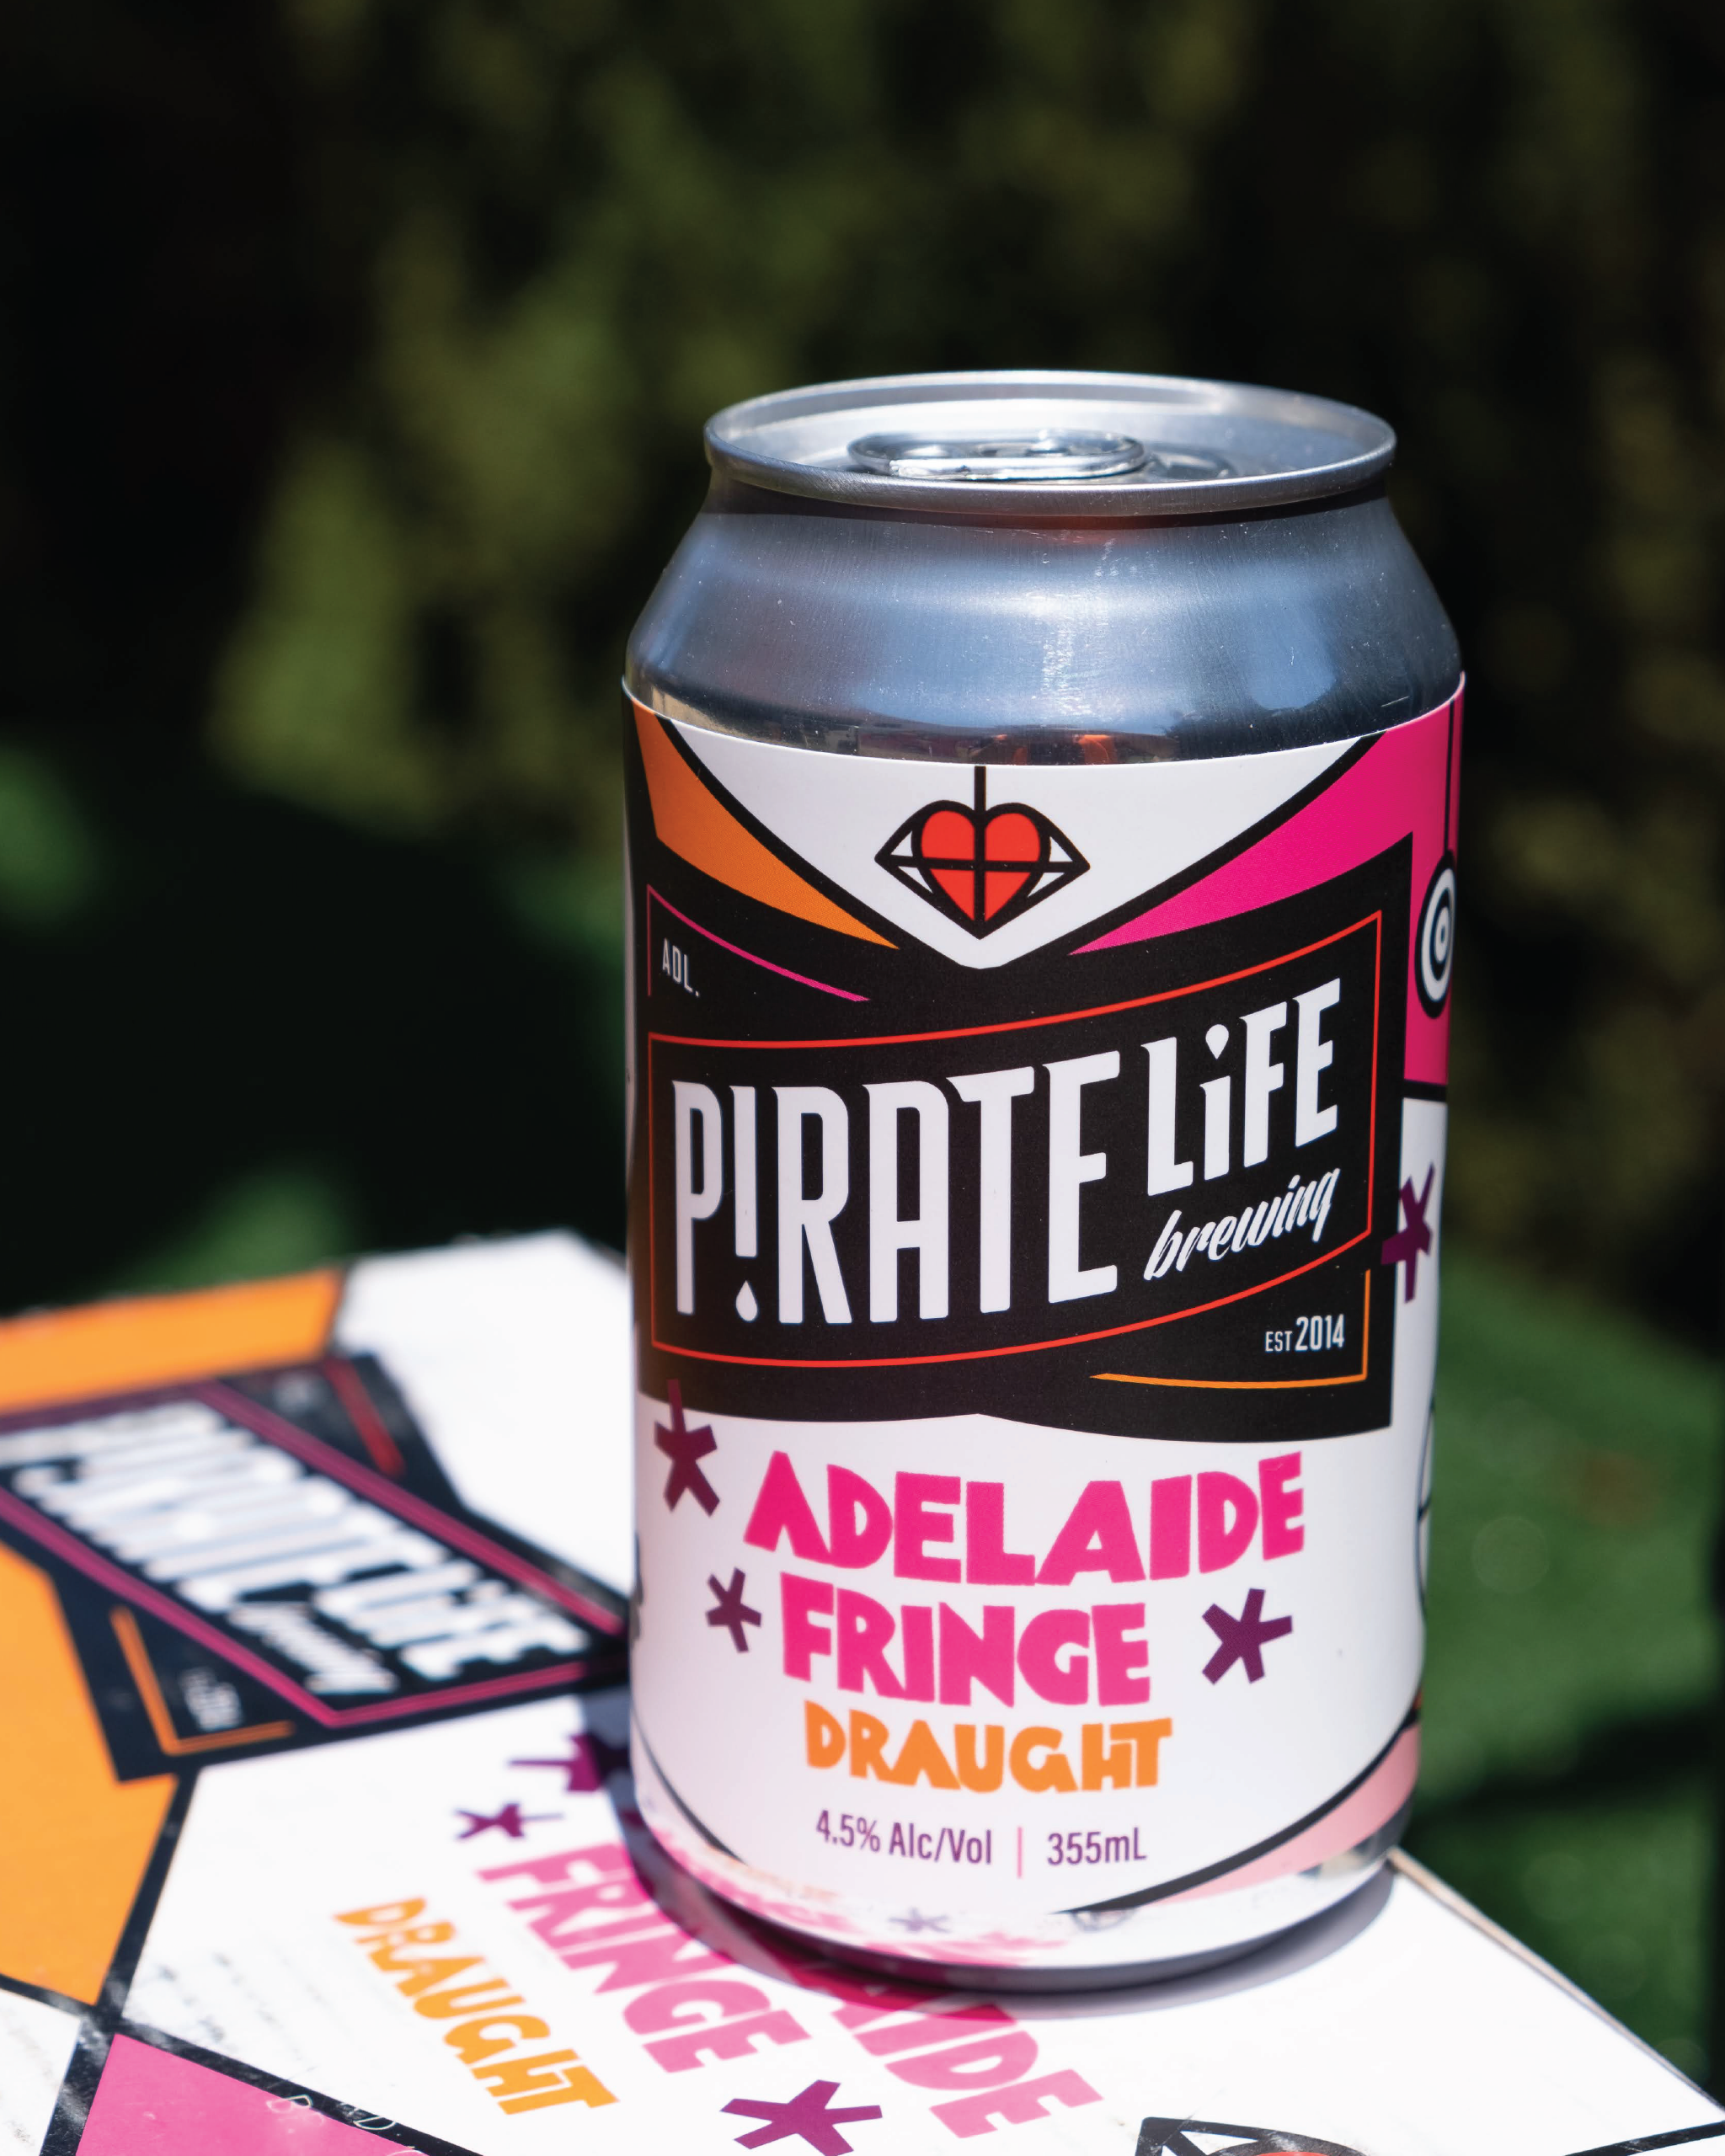 Adelaide Fringe Beer